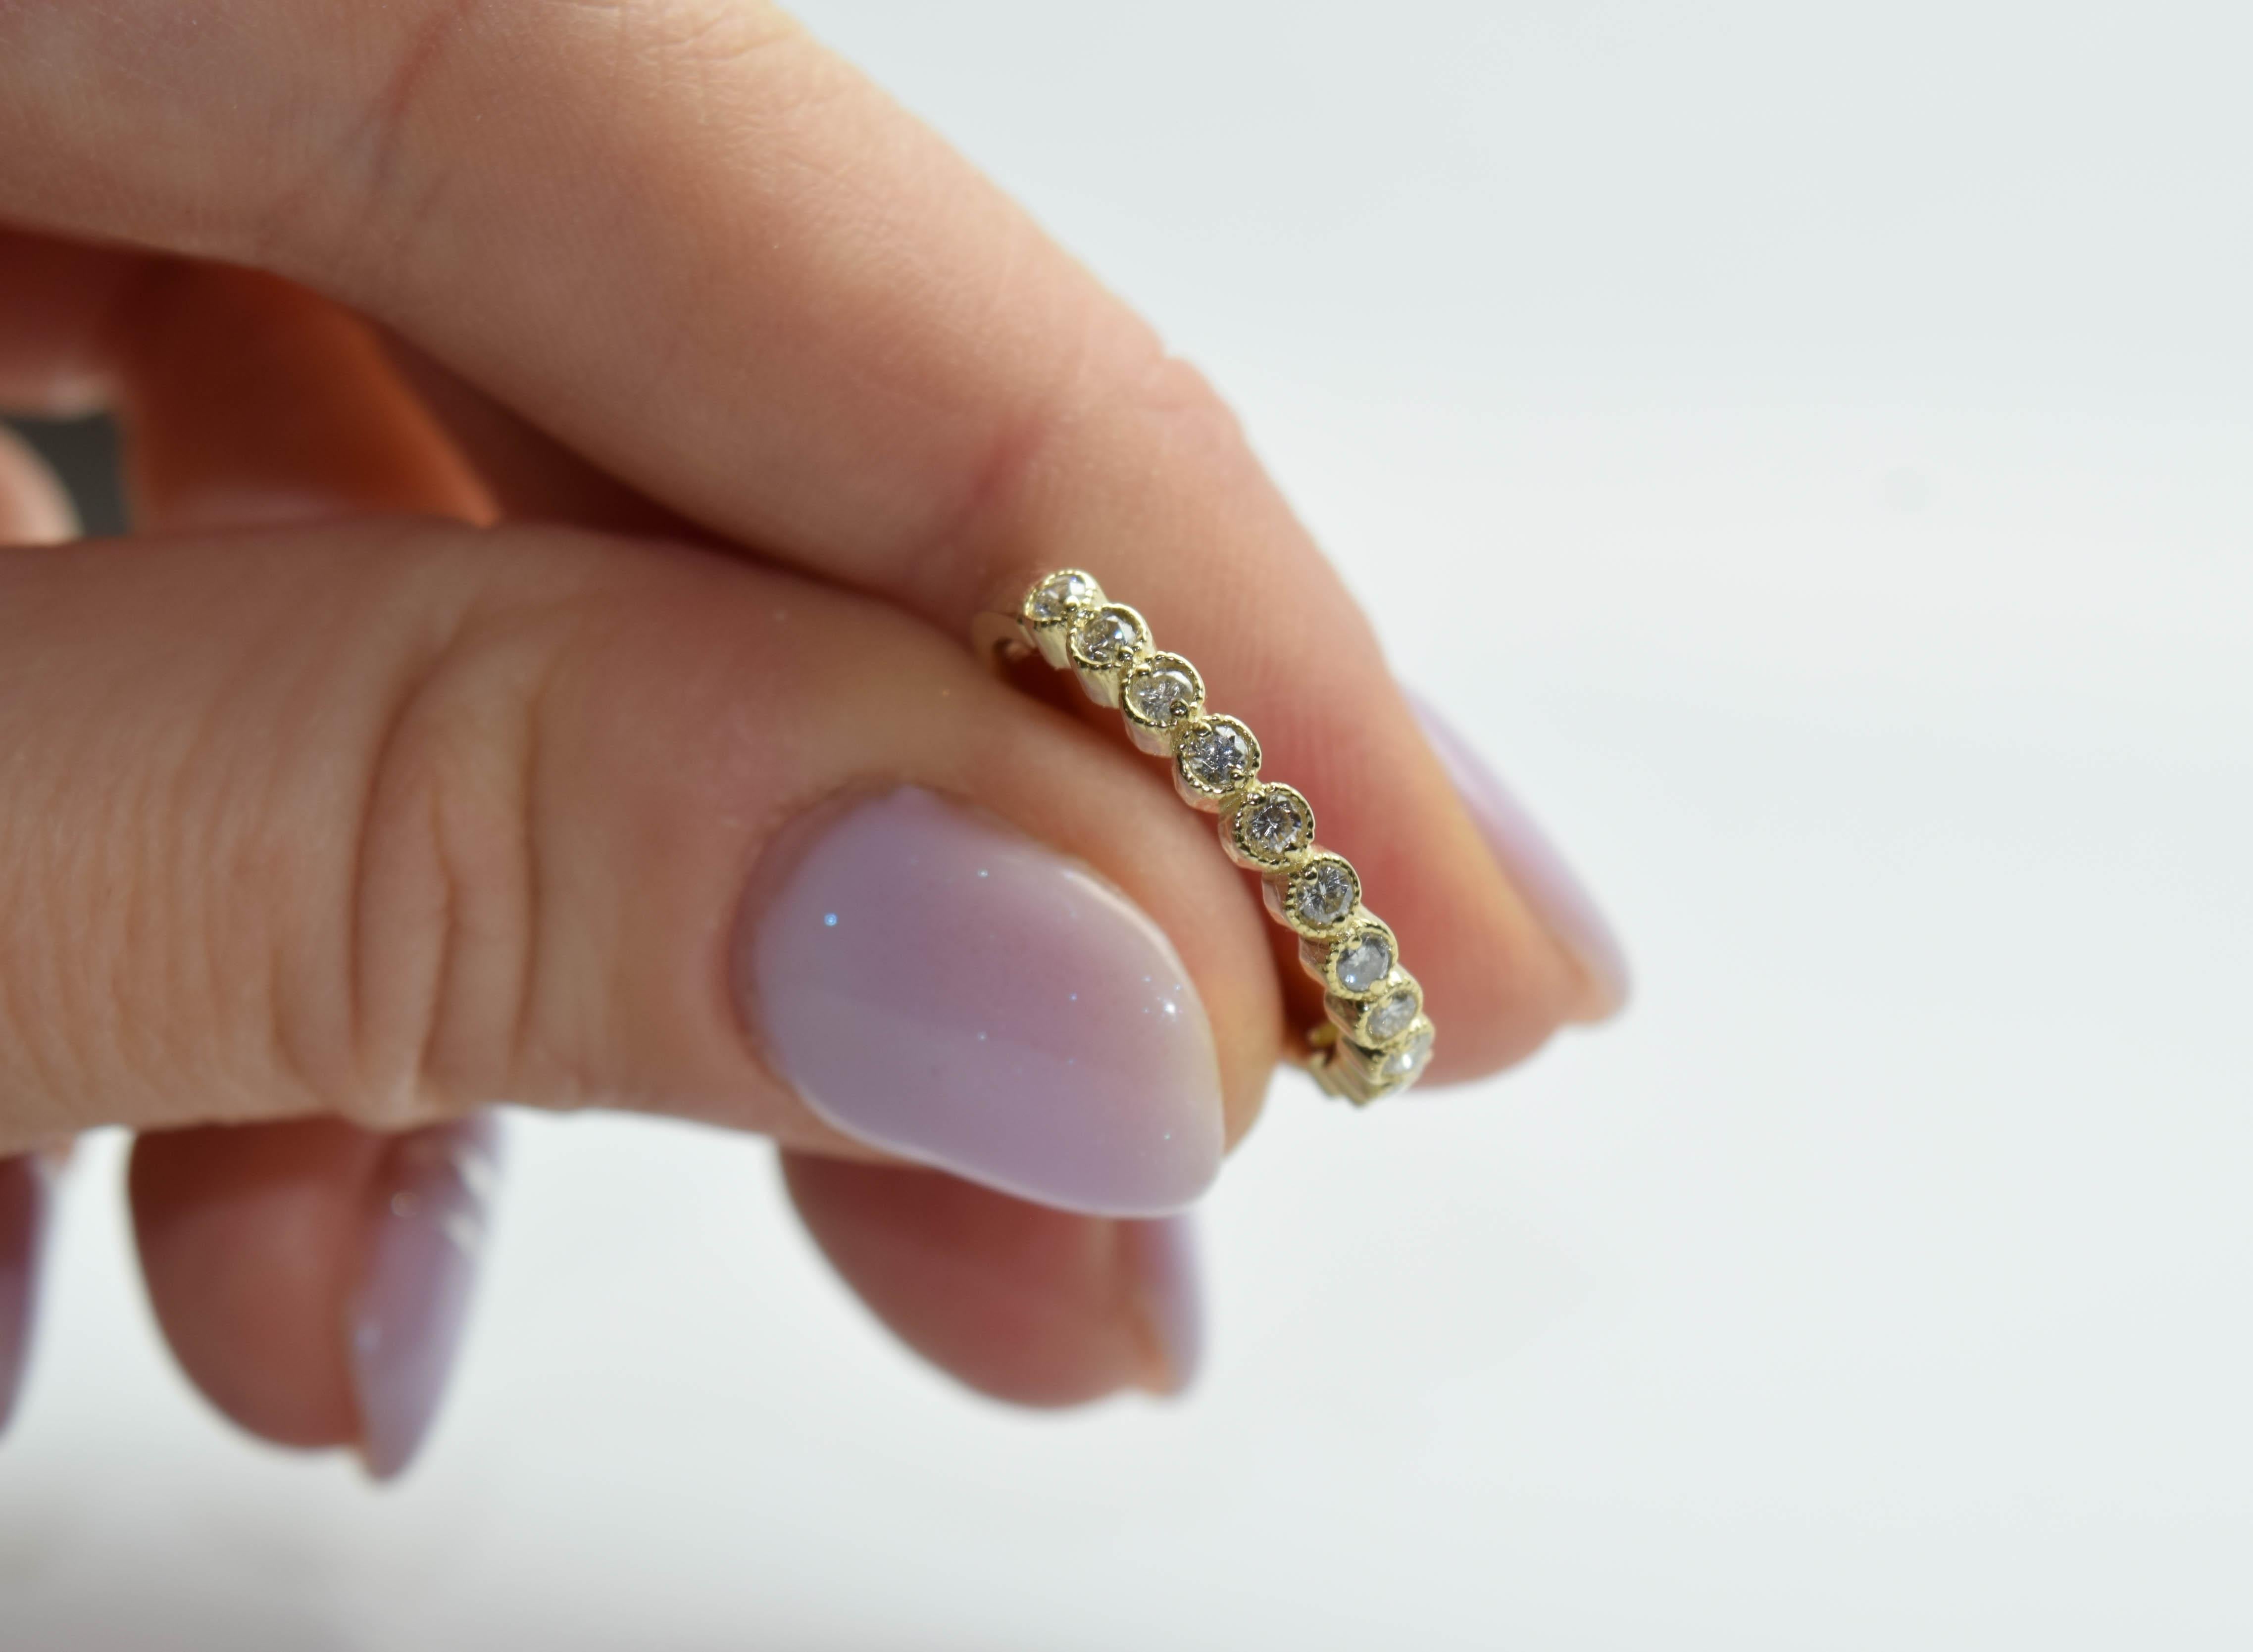 Schöner schlichter Diamantring mit 12 Diamanten aus 14 Kt. Gelbgold, handgefertigt mit winzigen Millegrain-Kugeln um jede Lünette, die dem Ring ein Vintage-Gefühl und Aussehen verleihen.

Metall Typ: 14KT
Natürliche Seite Diamant(en):
Farbe: